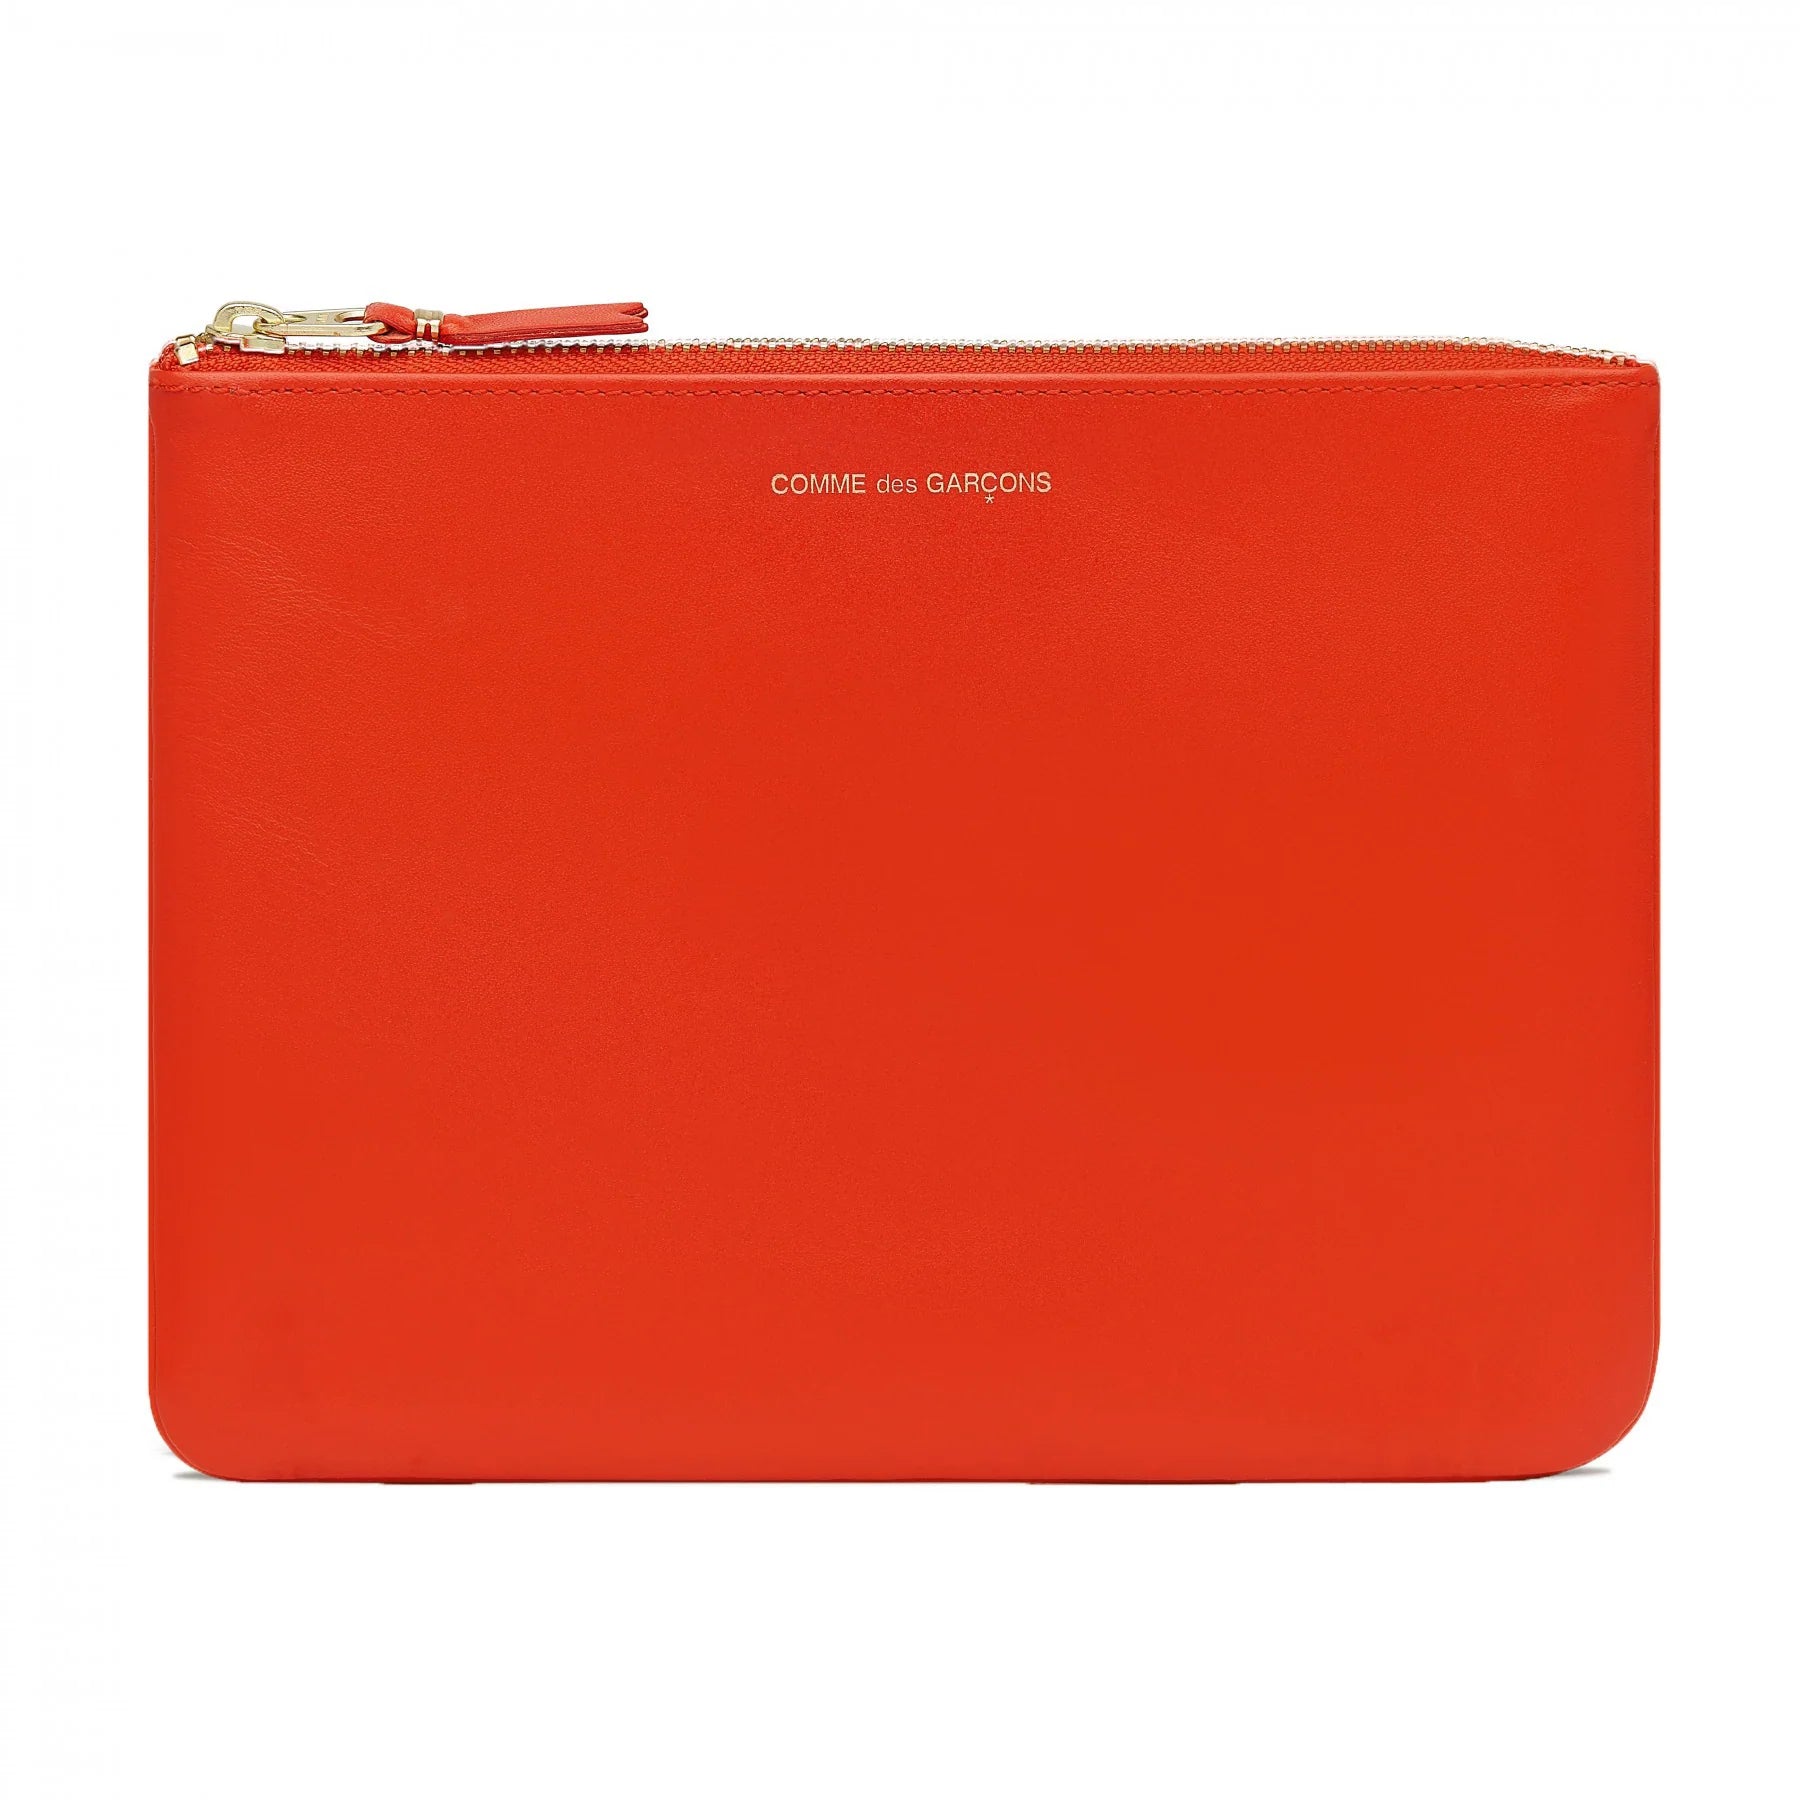 Comme Des Garcons Classic Leather Line Orange Unisex Wallet - 1